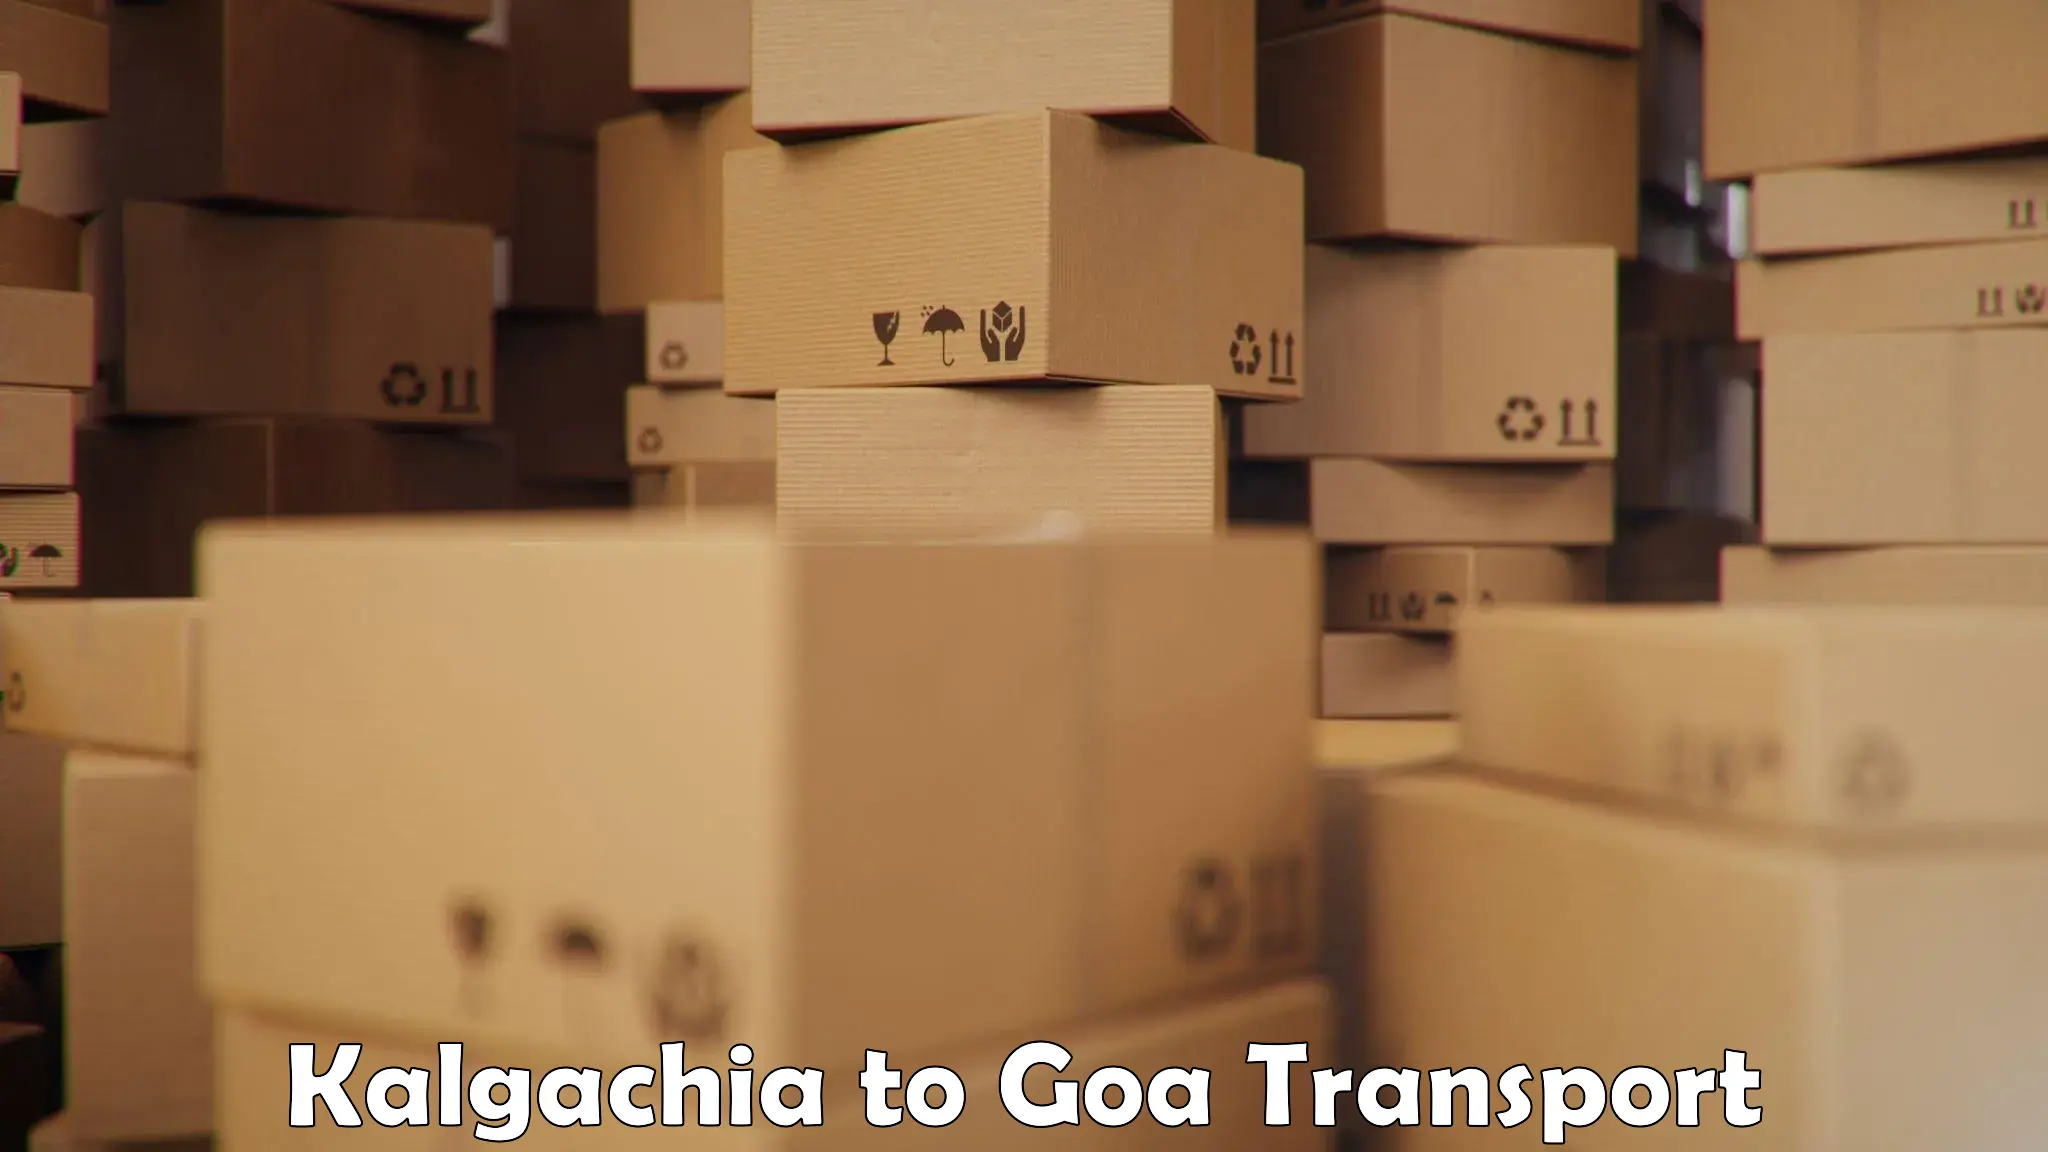 Goods transport services Kalgachia to Bardez